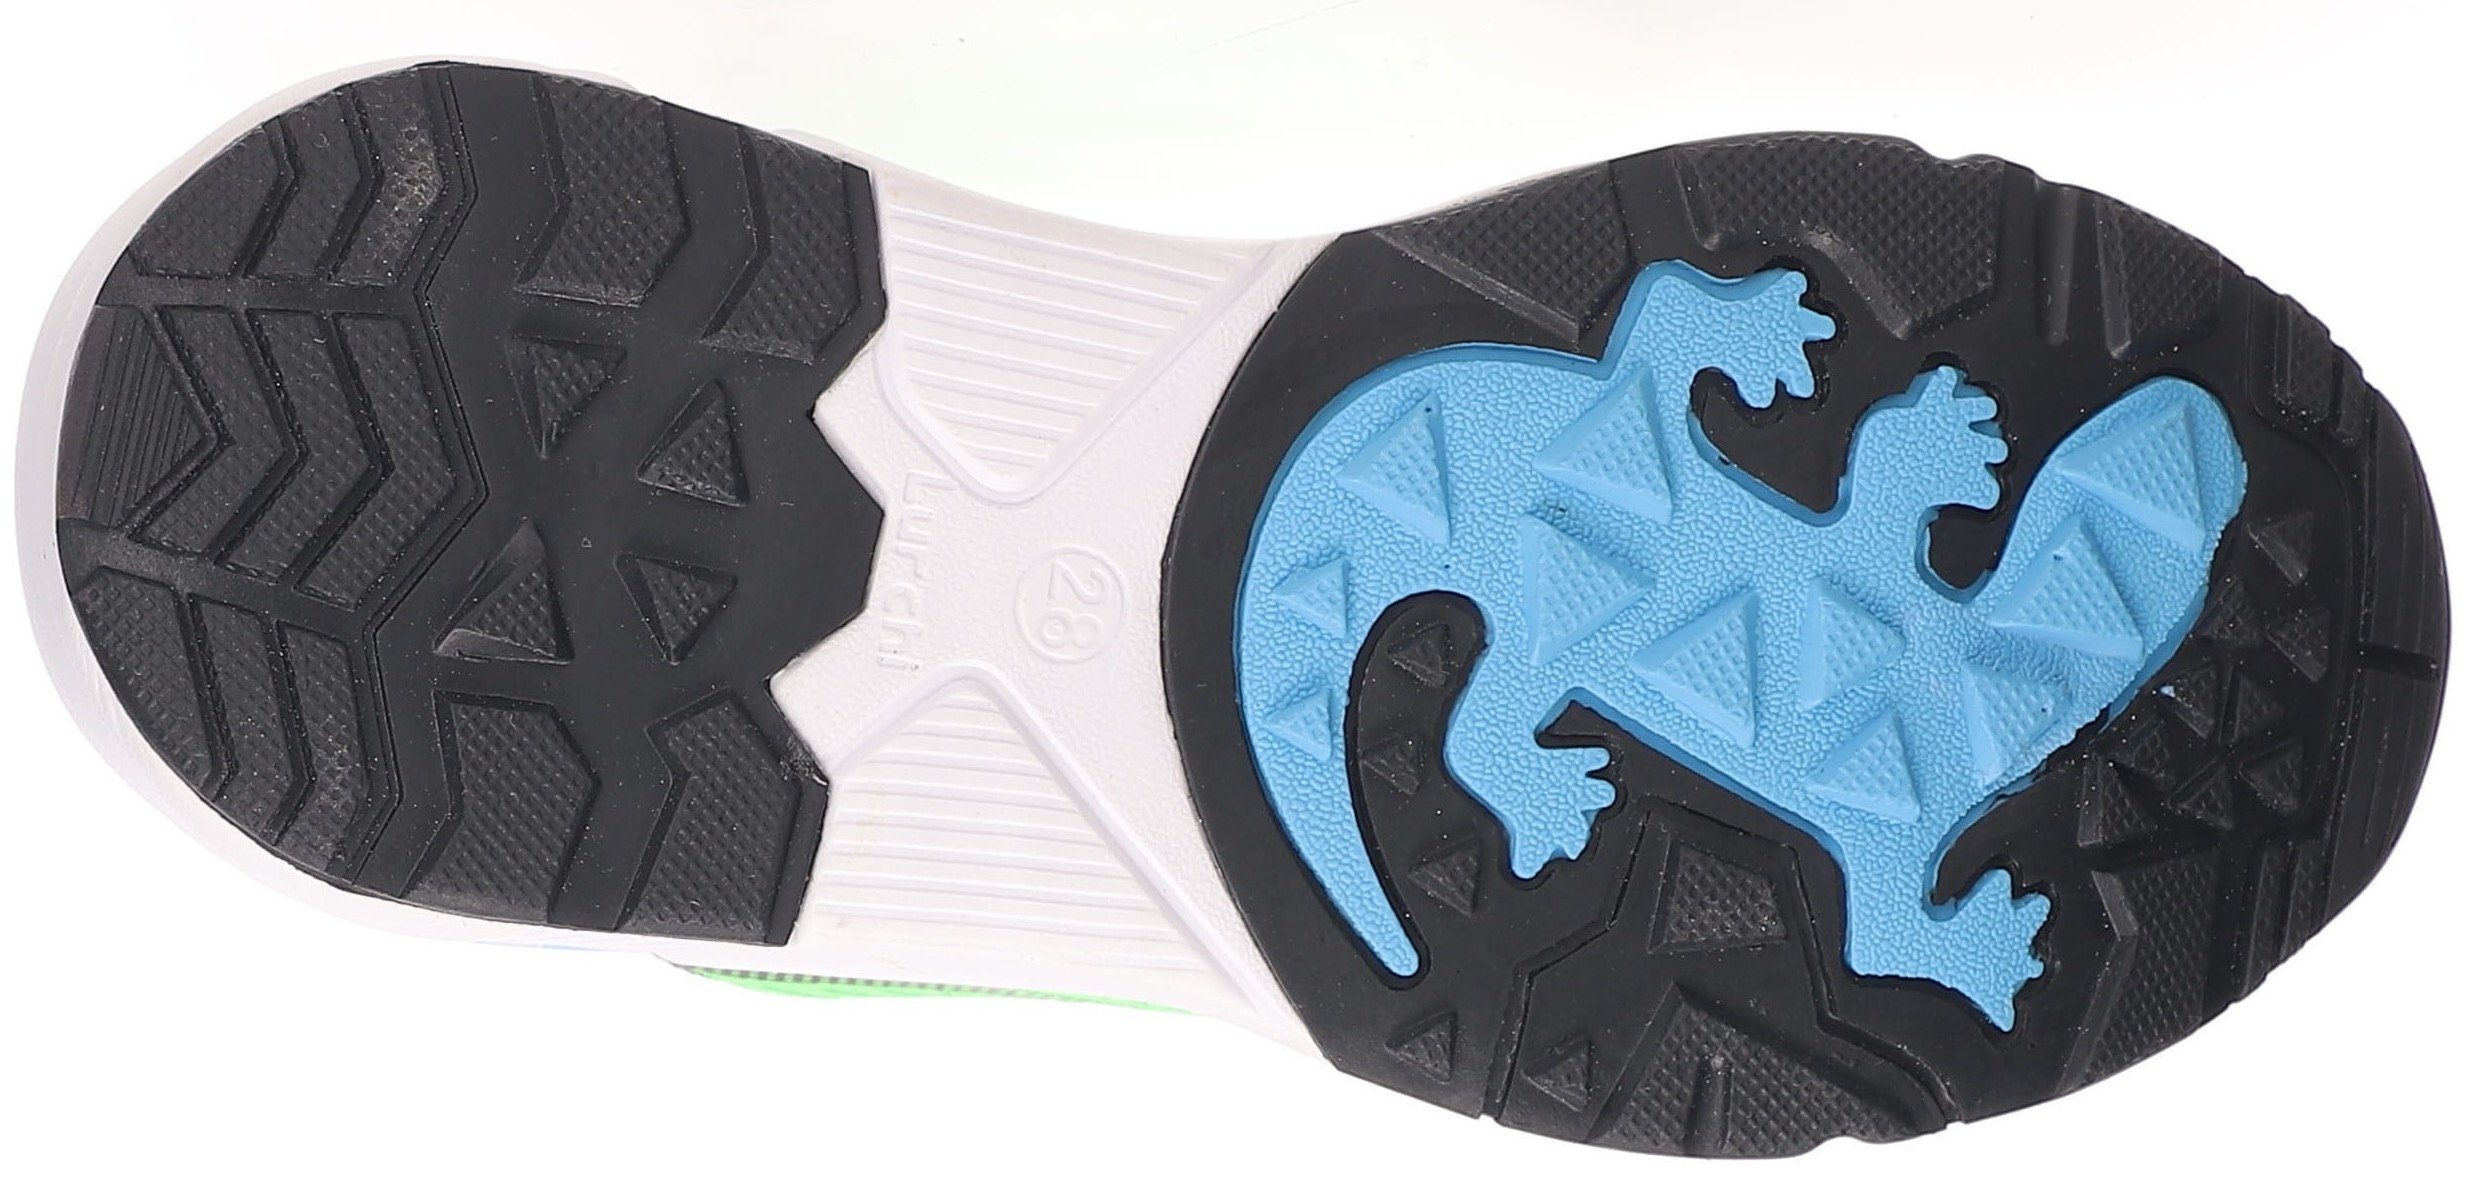 TEX-Membrane Leuron-Tex normal Sneaker mit by Lurchi neongrün-blau WMS: YK-ID